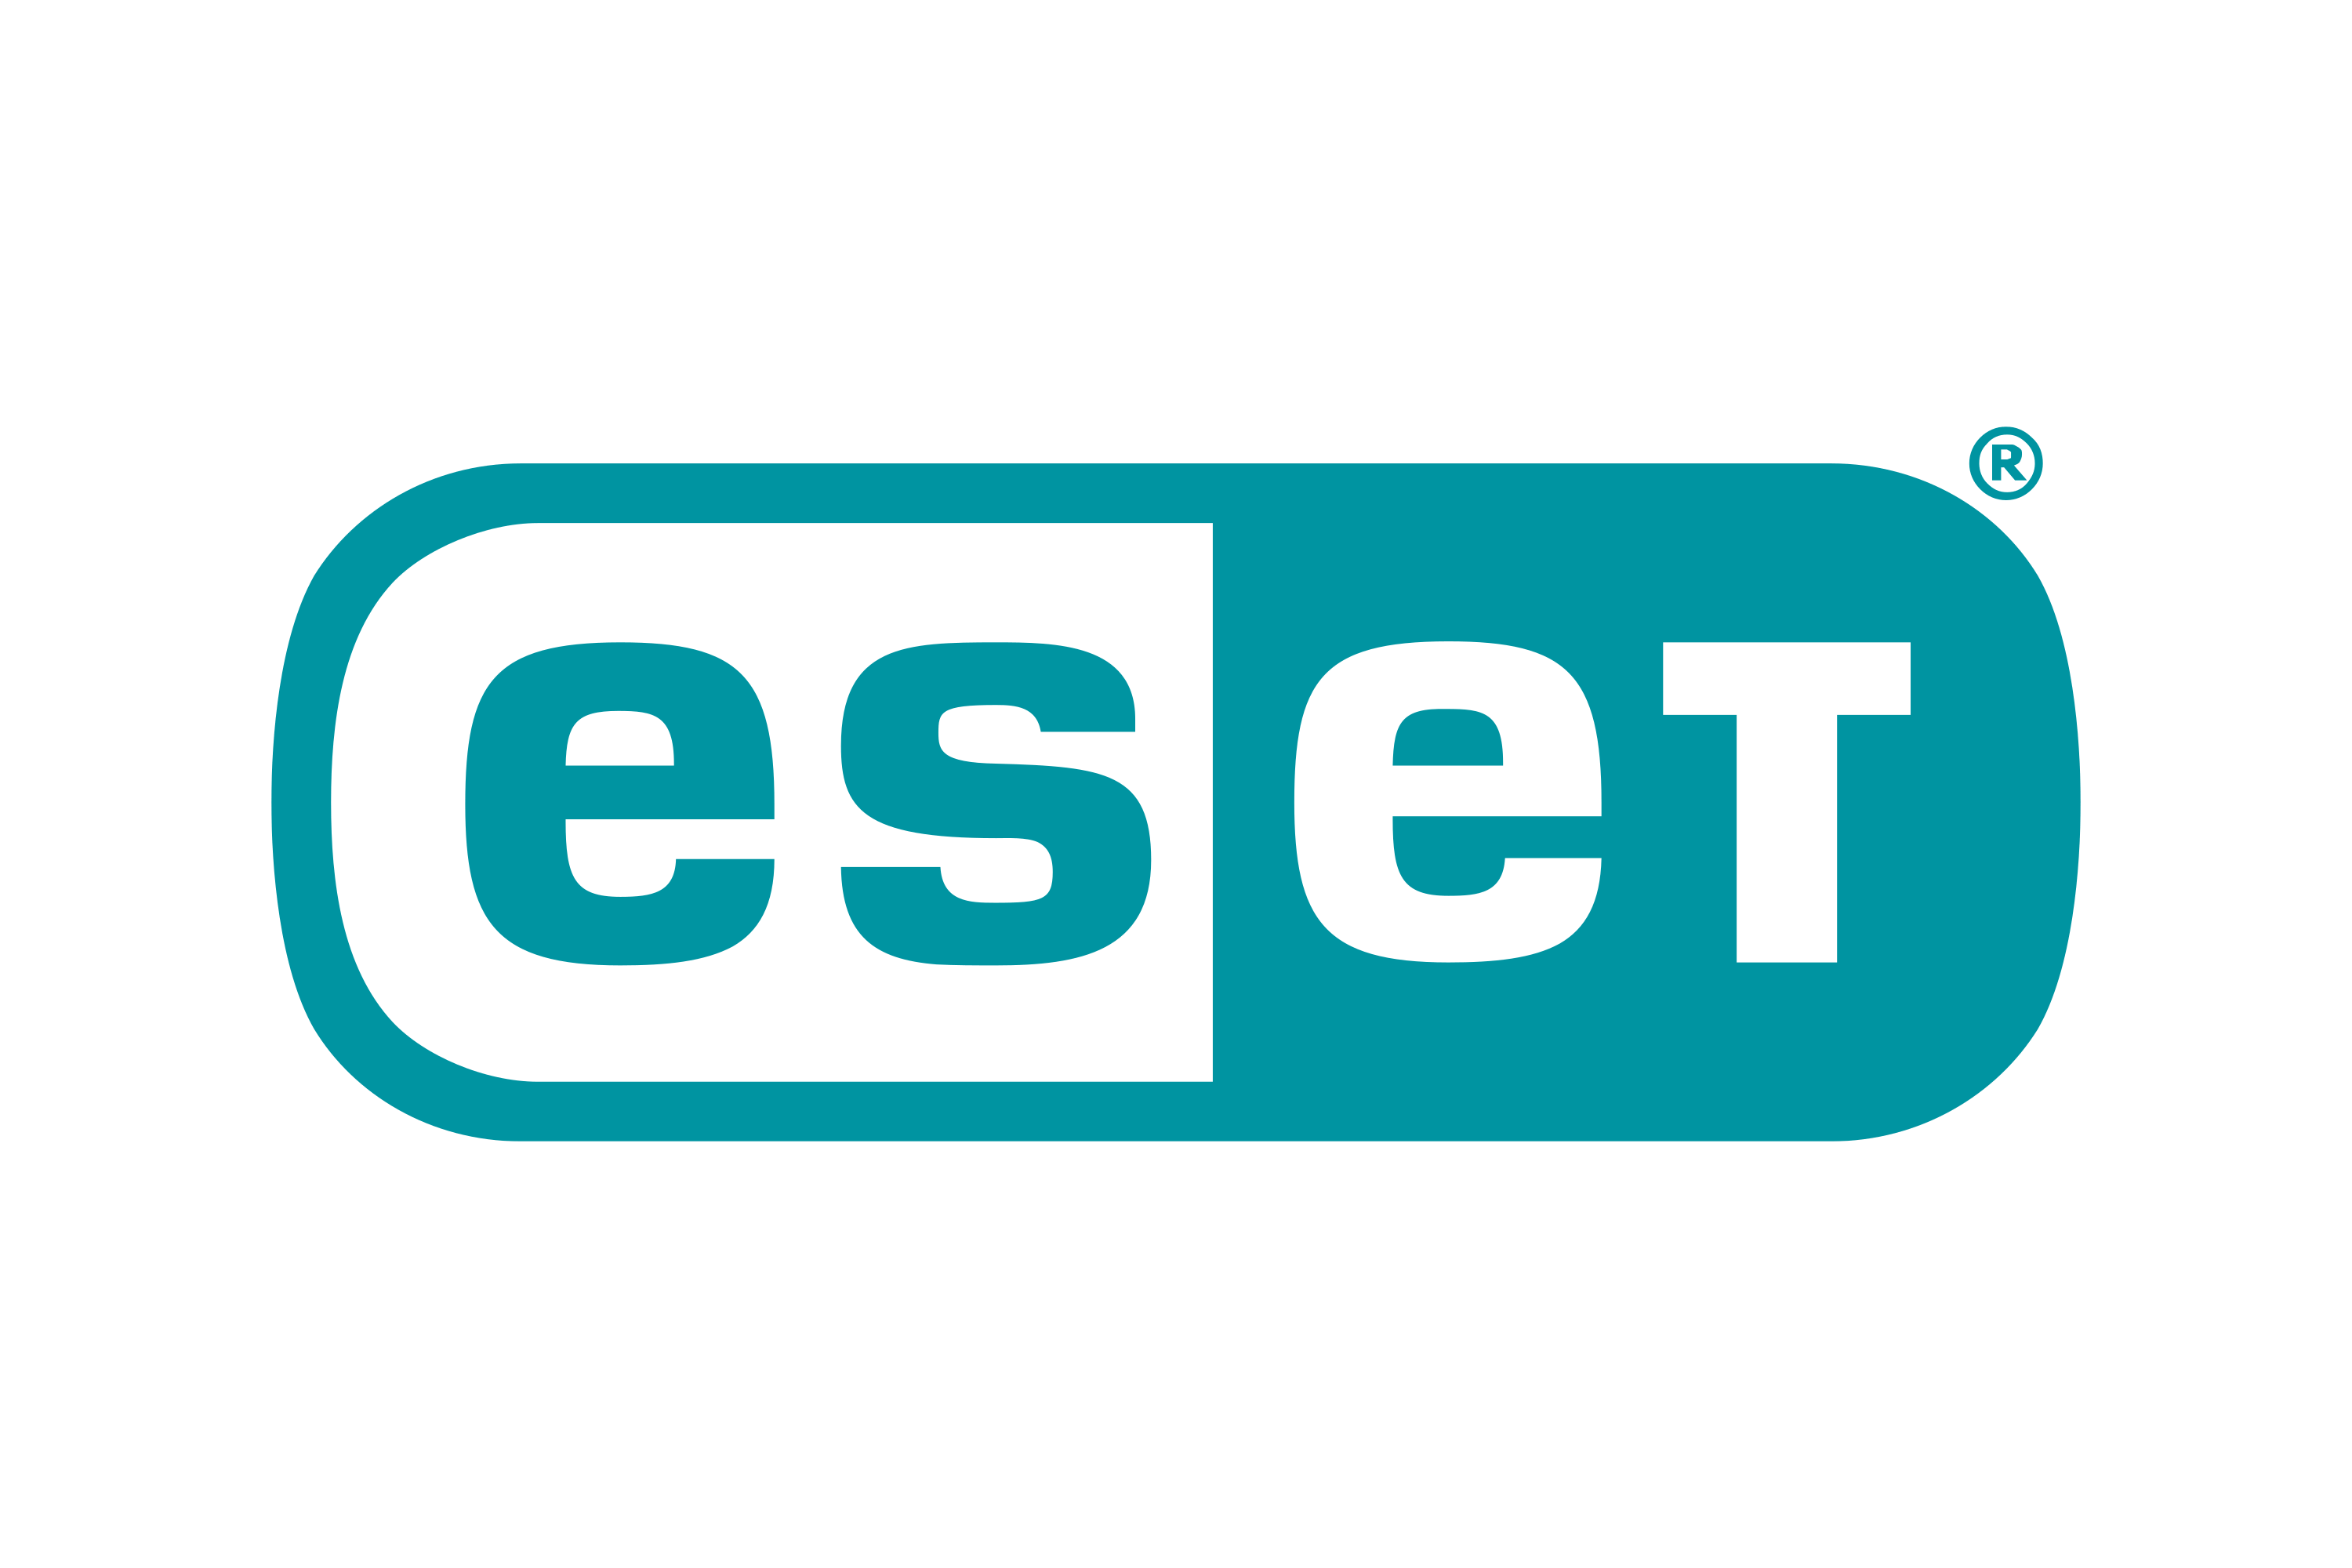 Download ESET Logo in SVG Vector or PNG File Format - Logo.wine